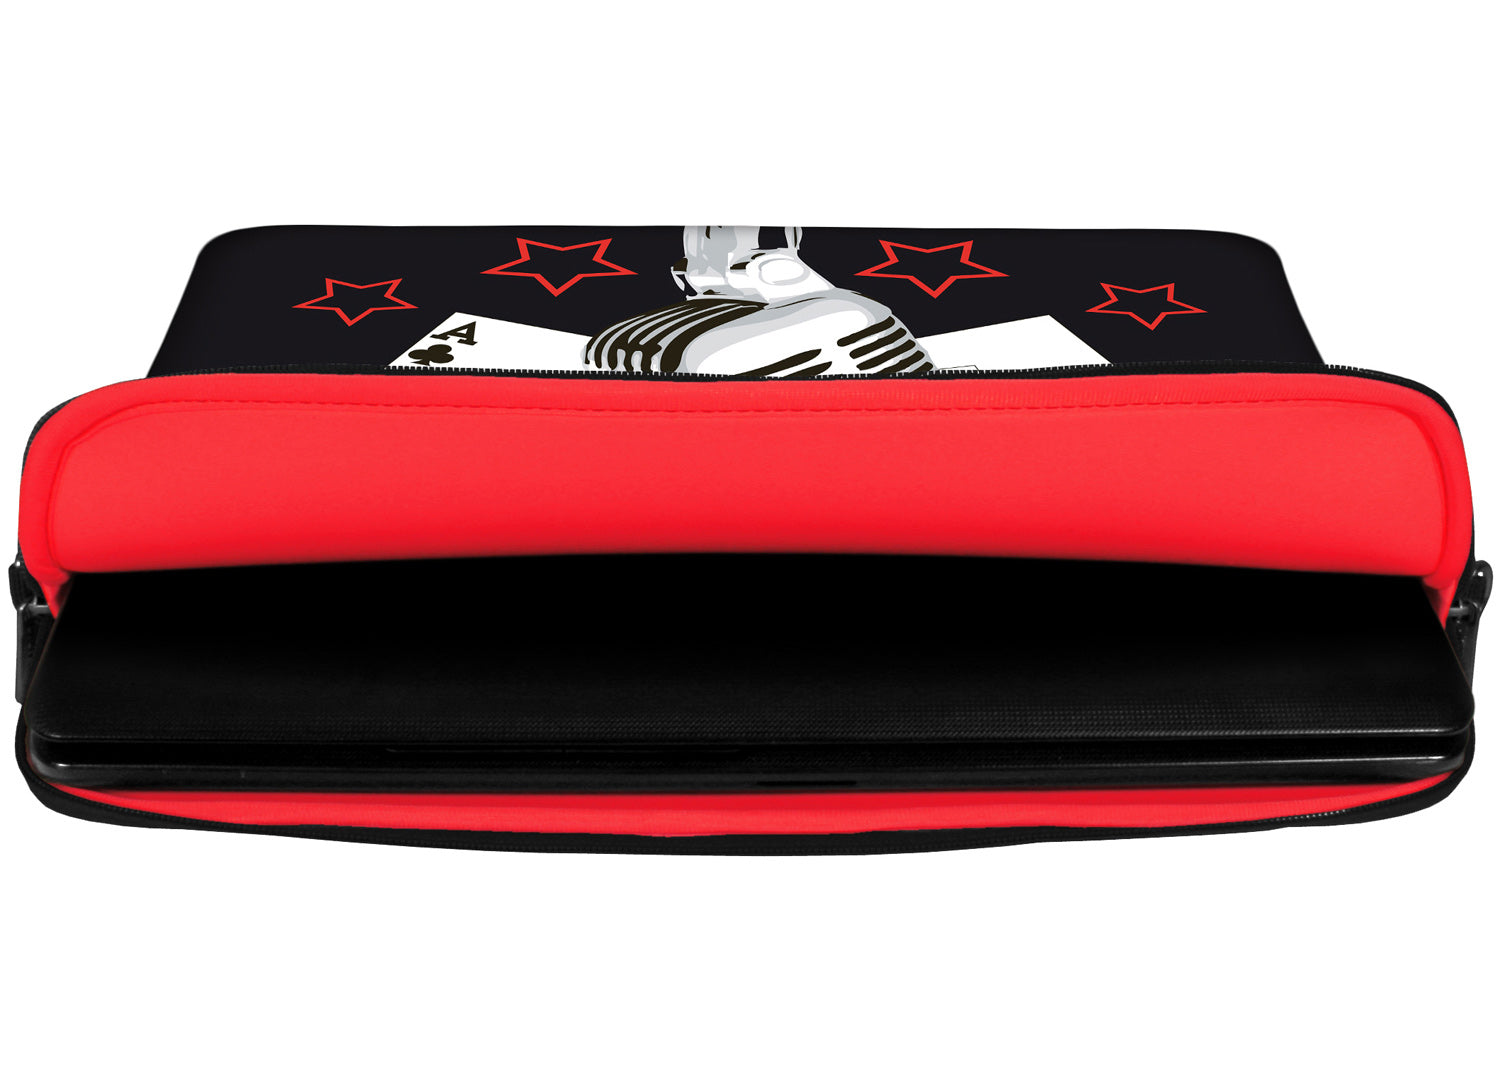 Innenansicht mit Schutzlippen der LS120 Pokerstars Designer Laptop Tasche in rot aus wasserabweisendem Neopren